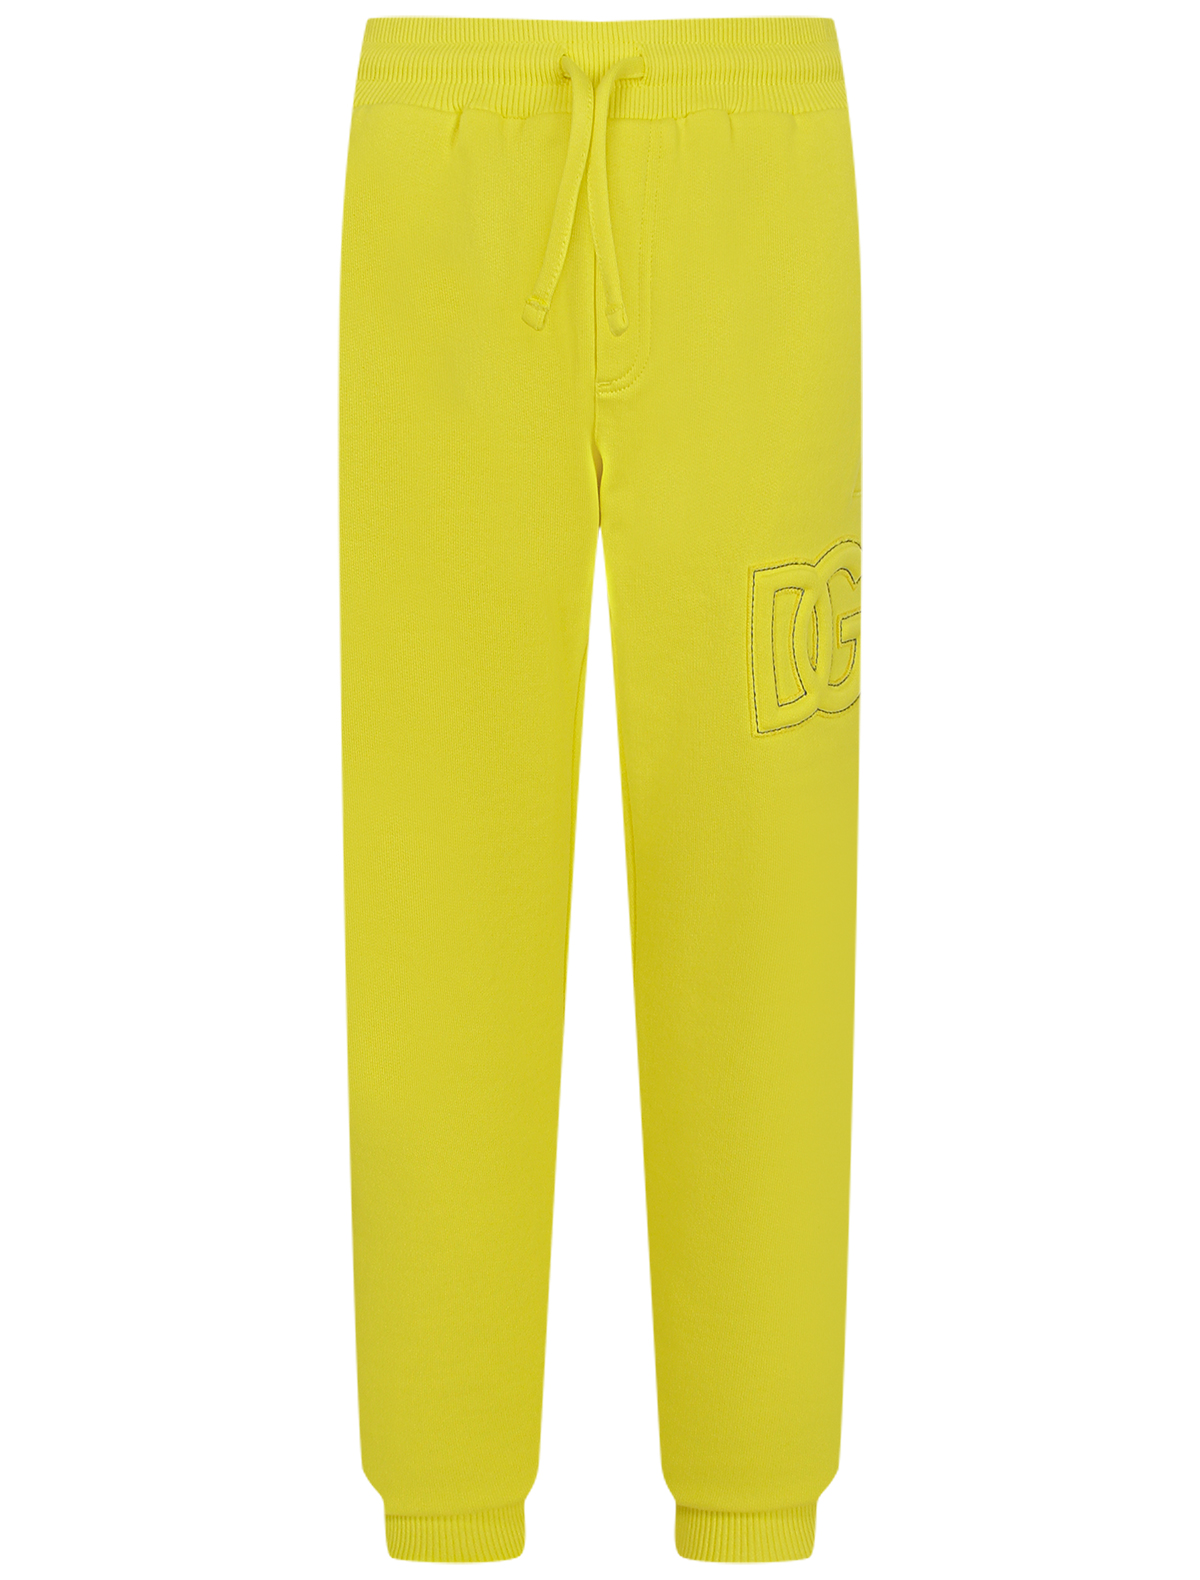 спортивные брюки dolce & gabbana для мальчика, желтые